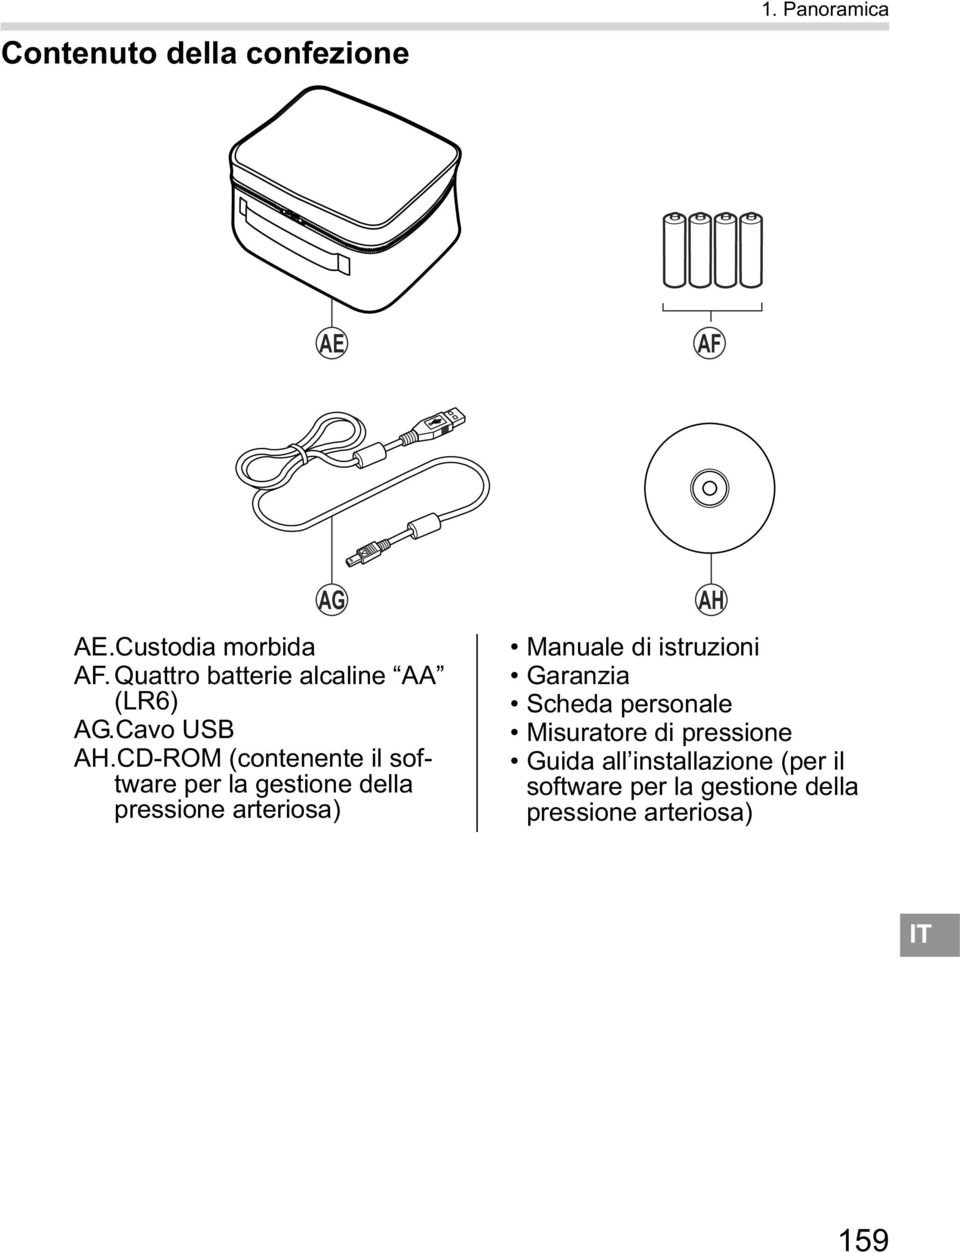 CD-ROM (contenente il software per la gestione della pressione arteriosa) AH Manuale di